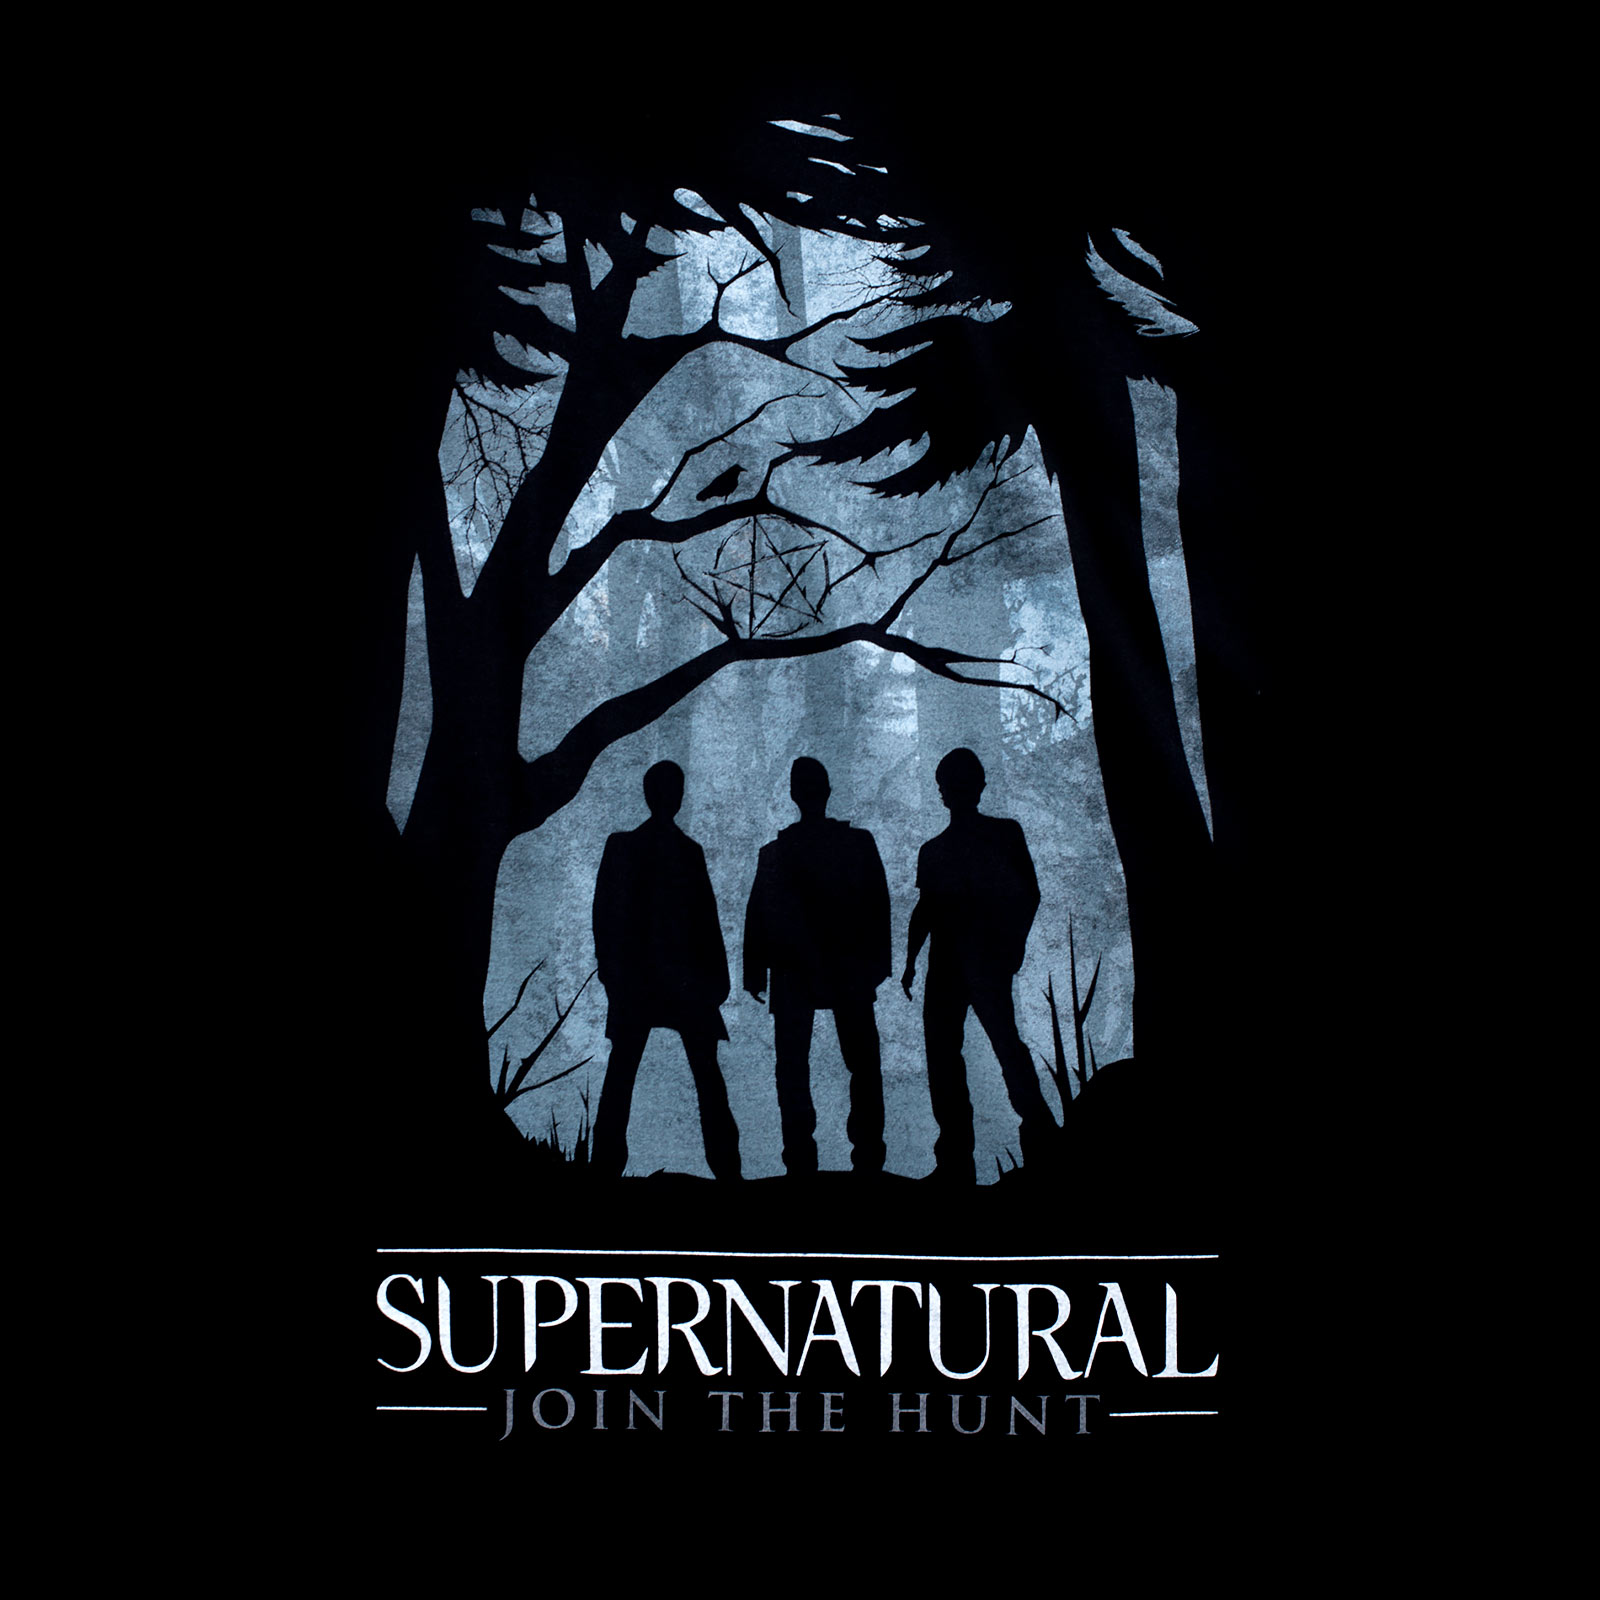 Supernatural - T-shirt de chasseurs de démons noir